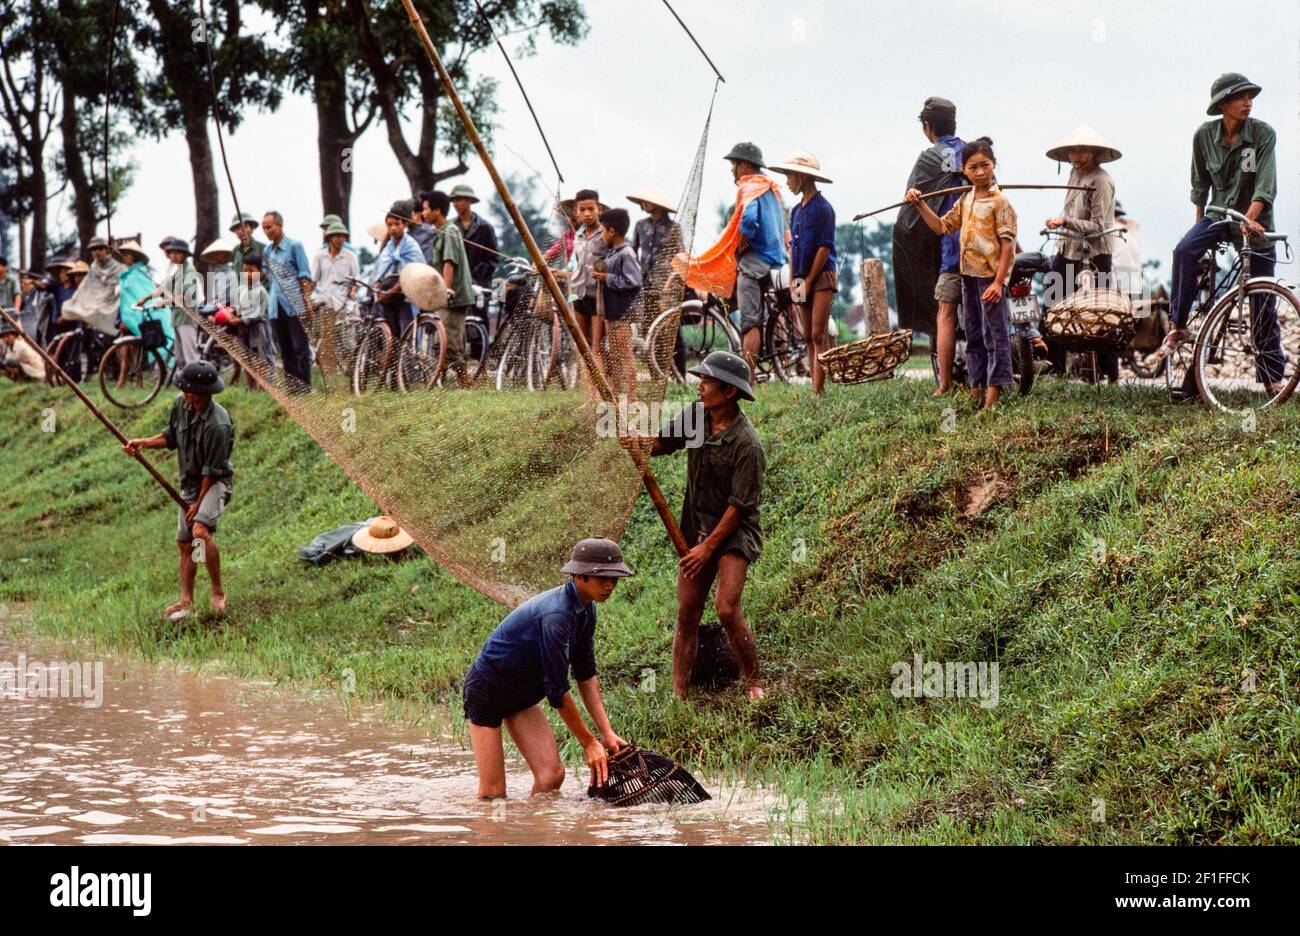 Villageois qui pêchent dans les étangs à poissons avec filets et paniers de pêche, dans les zones rurales du sud du Vietnam, juin 1980 Banque D'Images